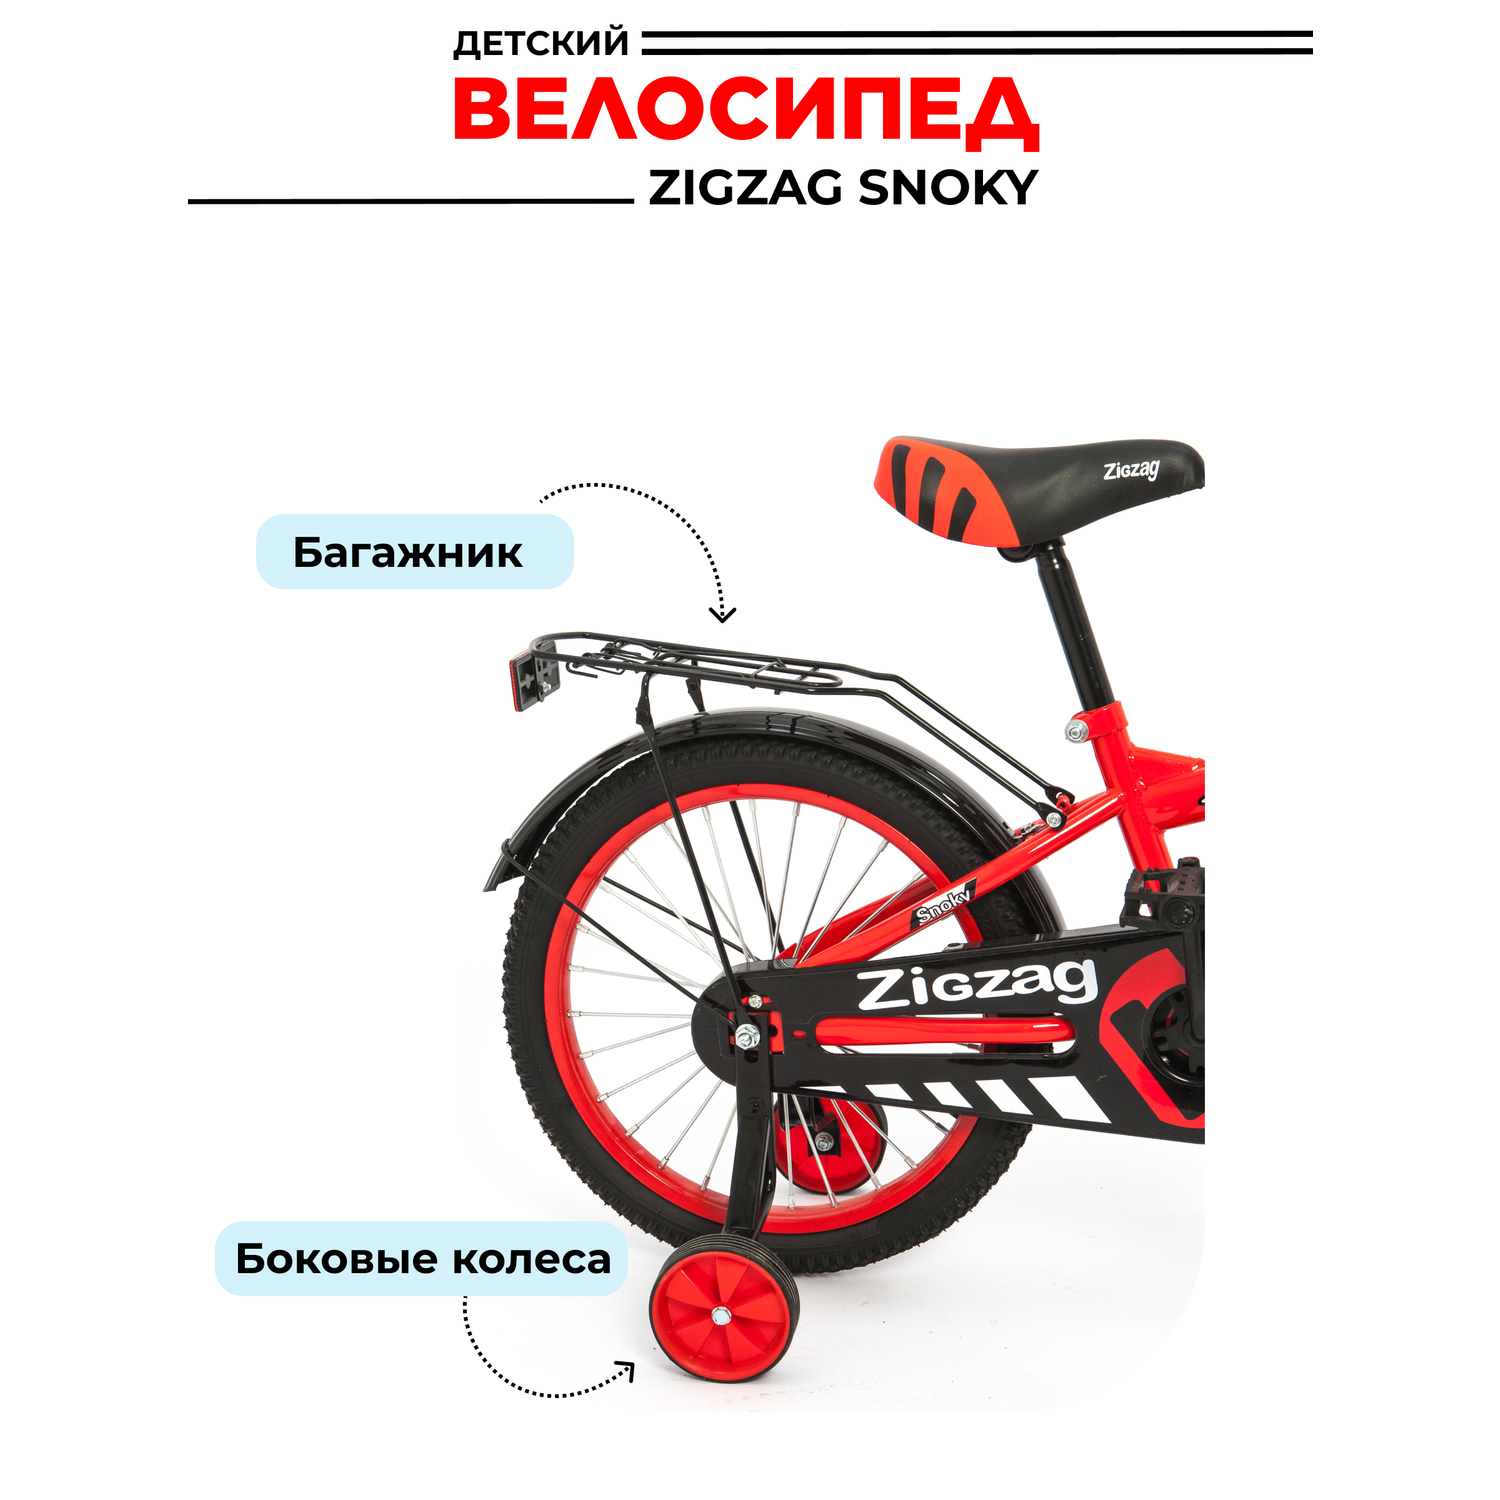 Велосипед ZigZag SNOKY красный 16 дюймов - фото 4